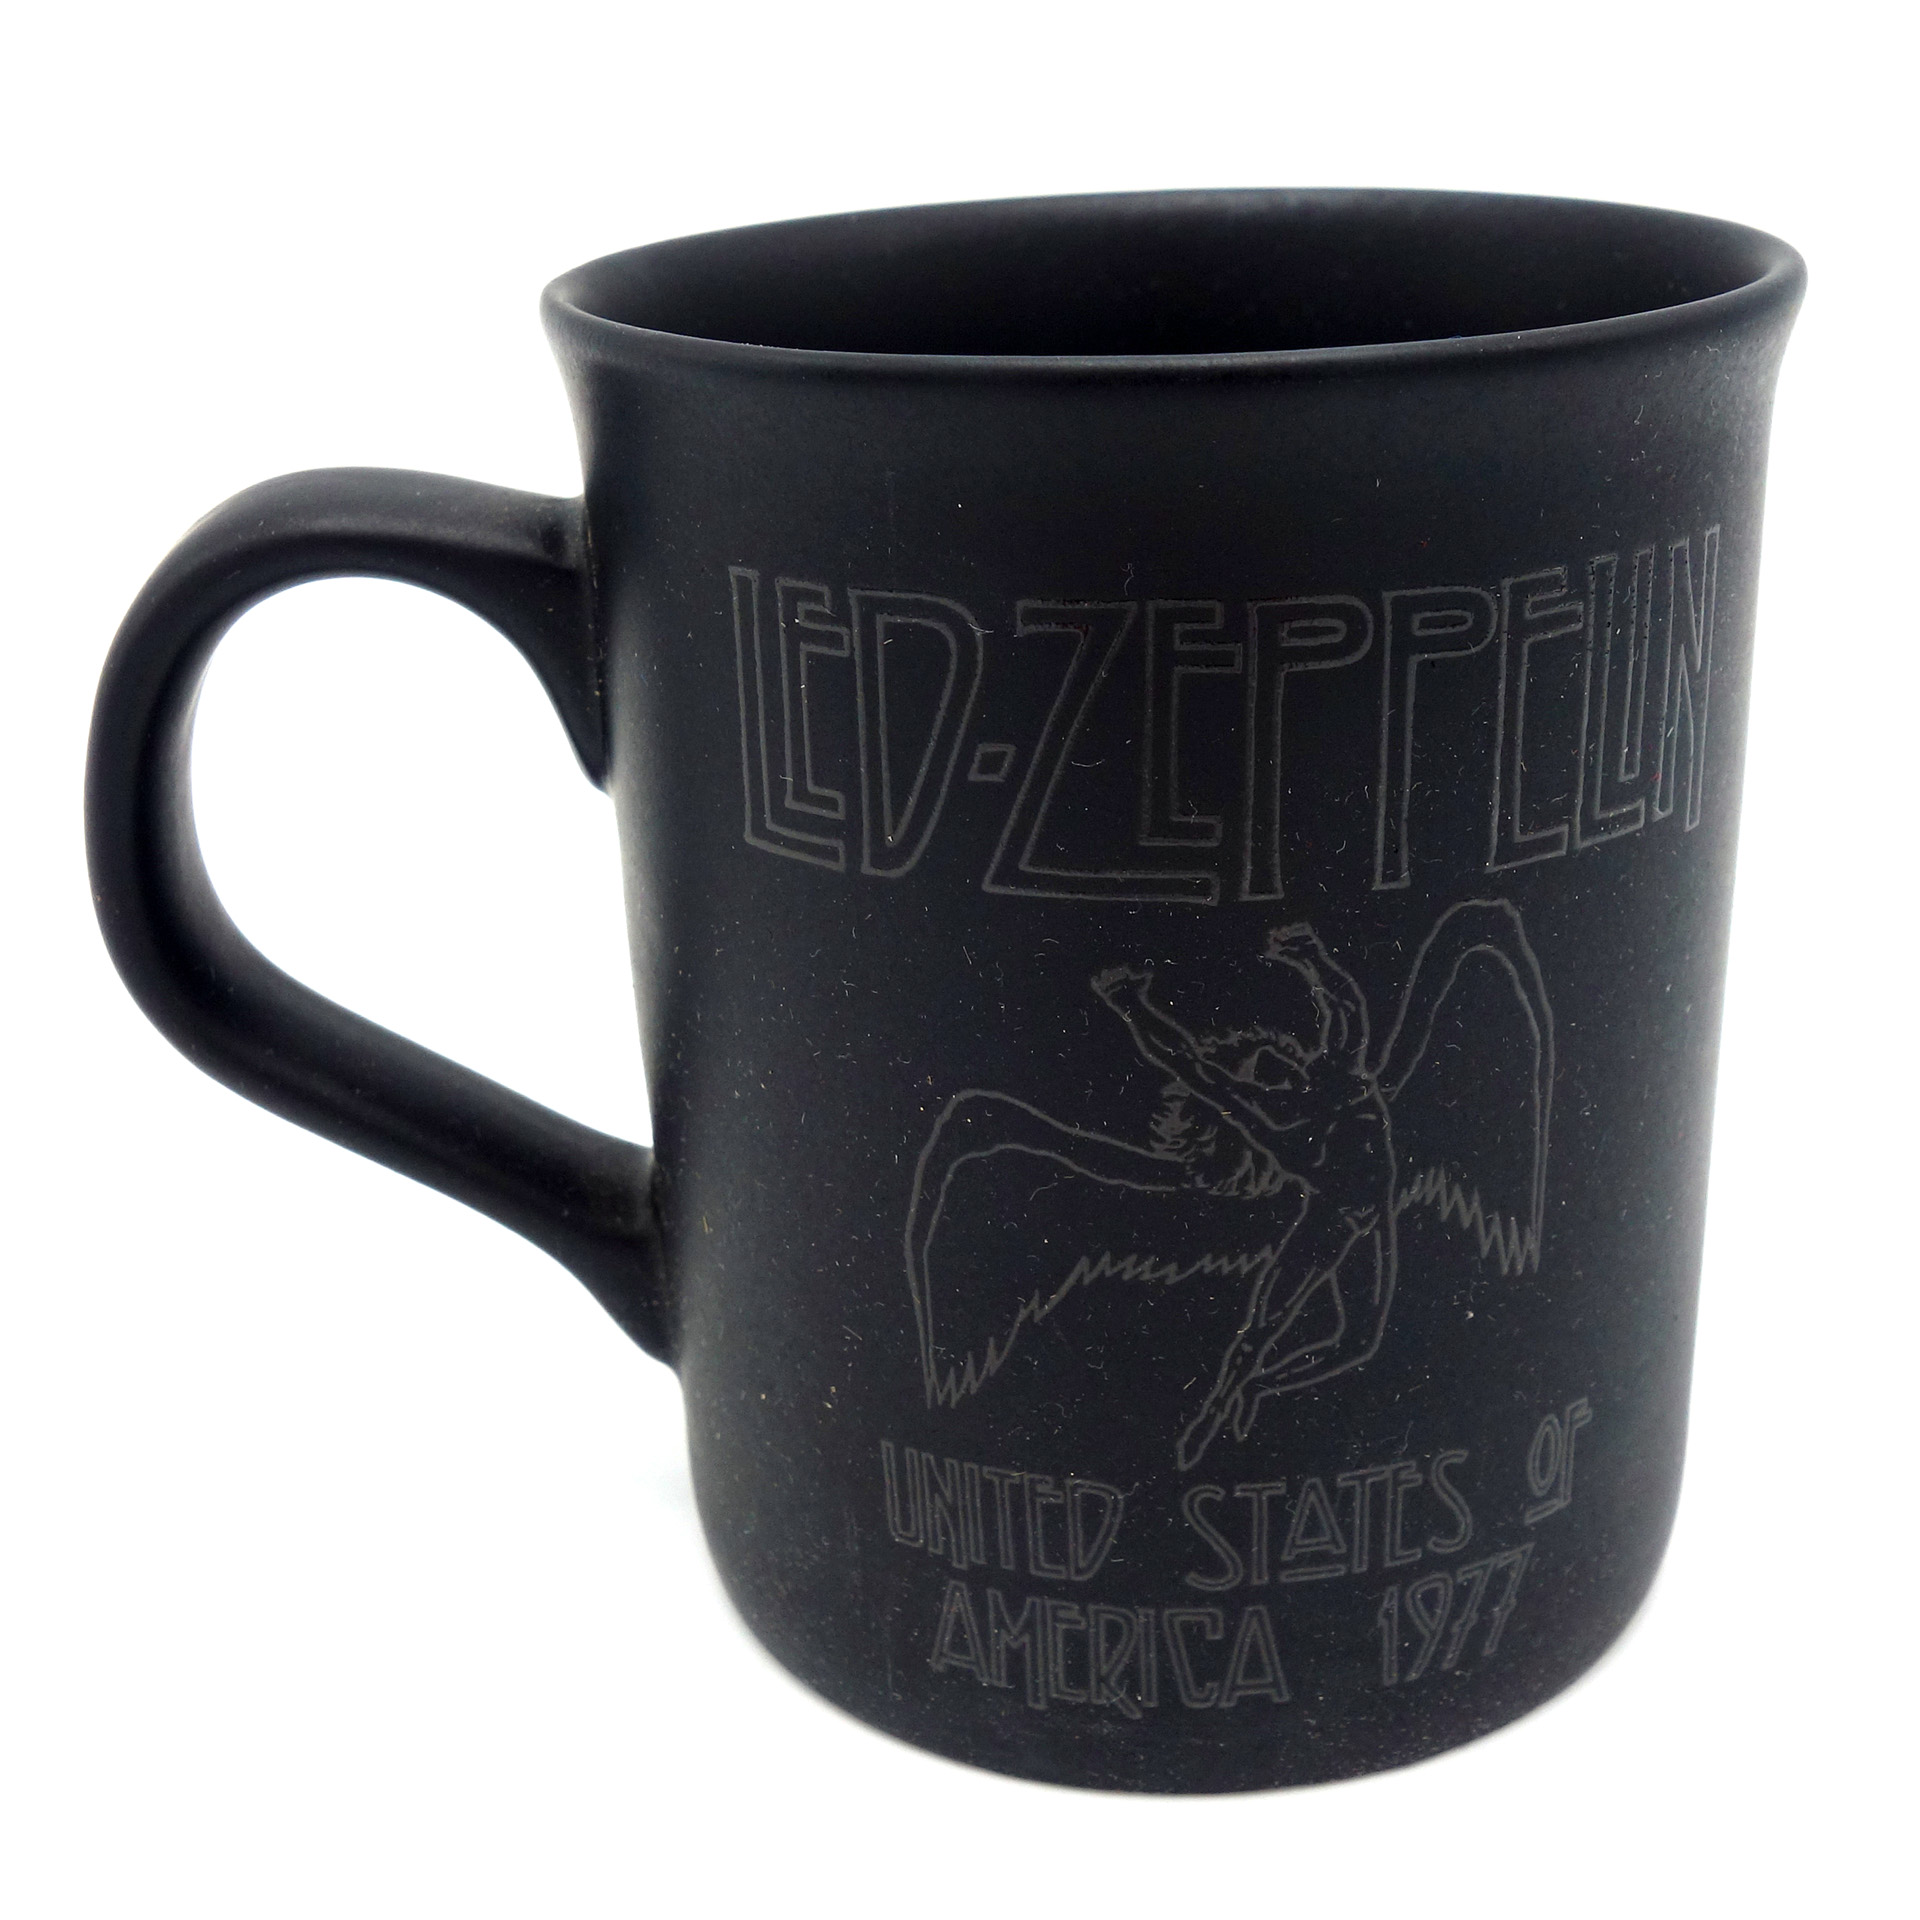 Tasse Led Zeppelin Becher United States Of America 1977